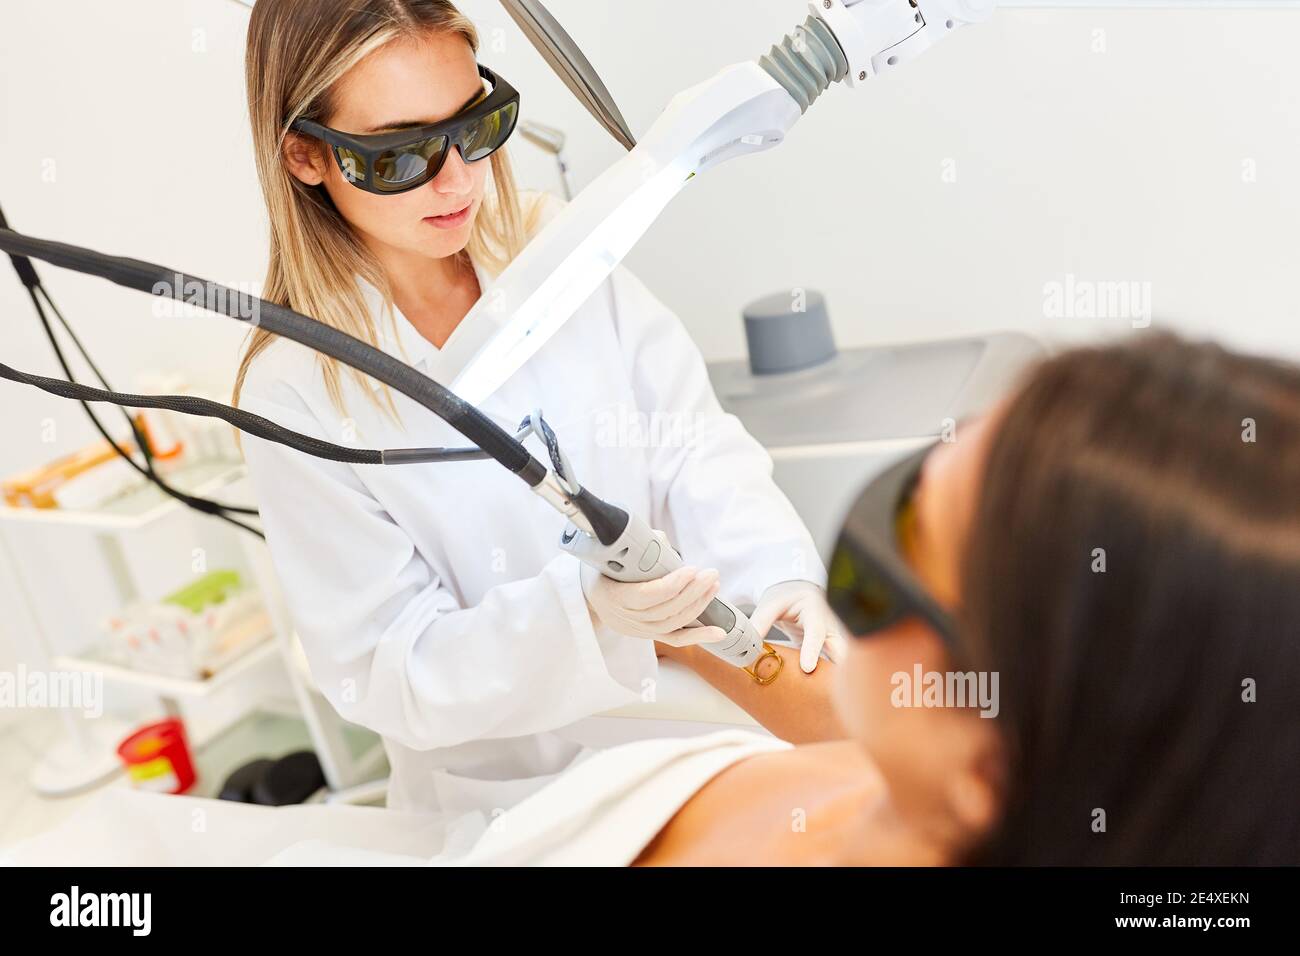 Dermatologo per la rimozione permanente dei capelli sull'avambraccio con laser alexandrite Foto Stock